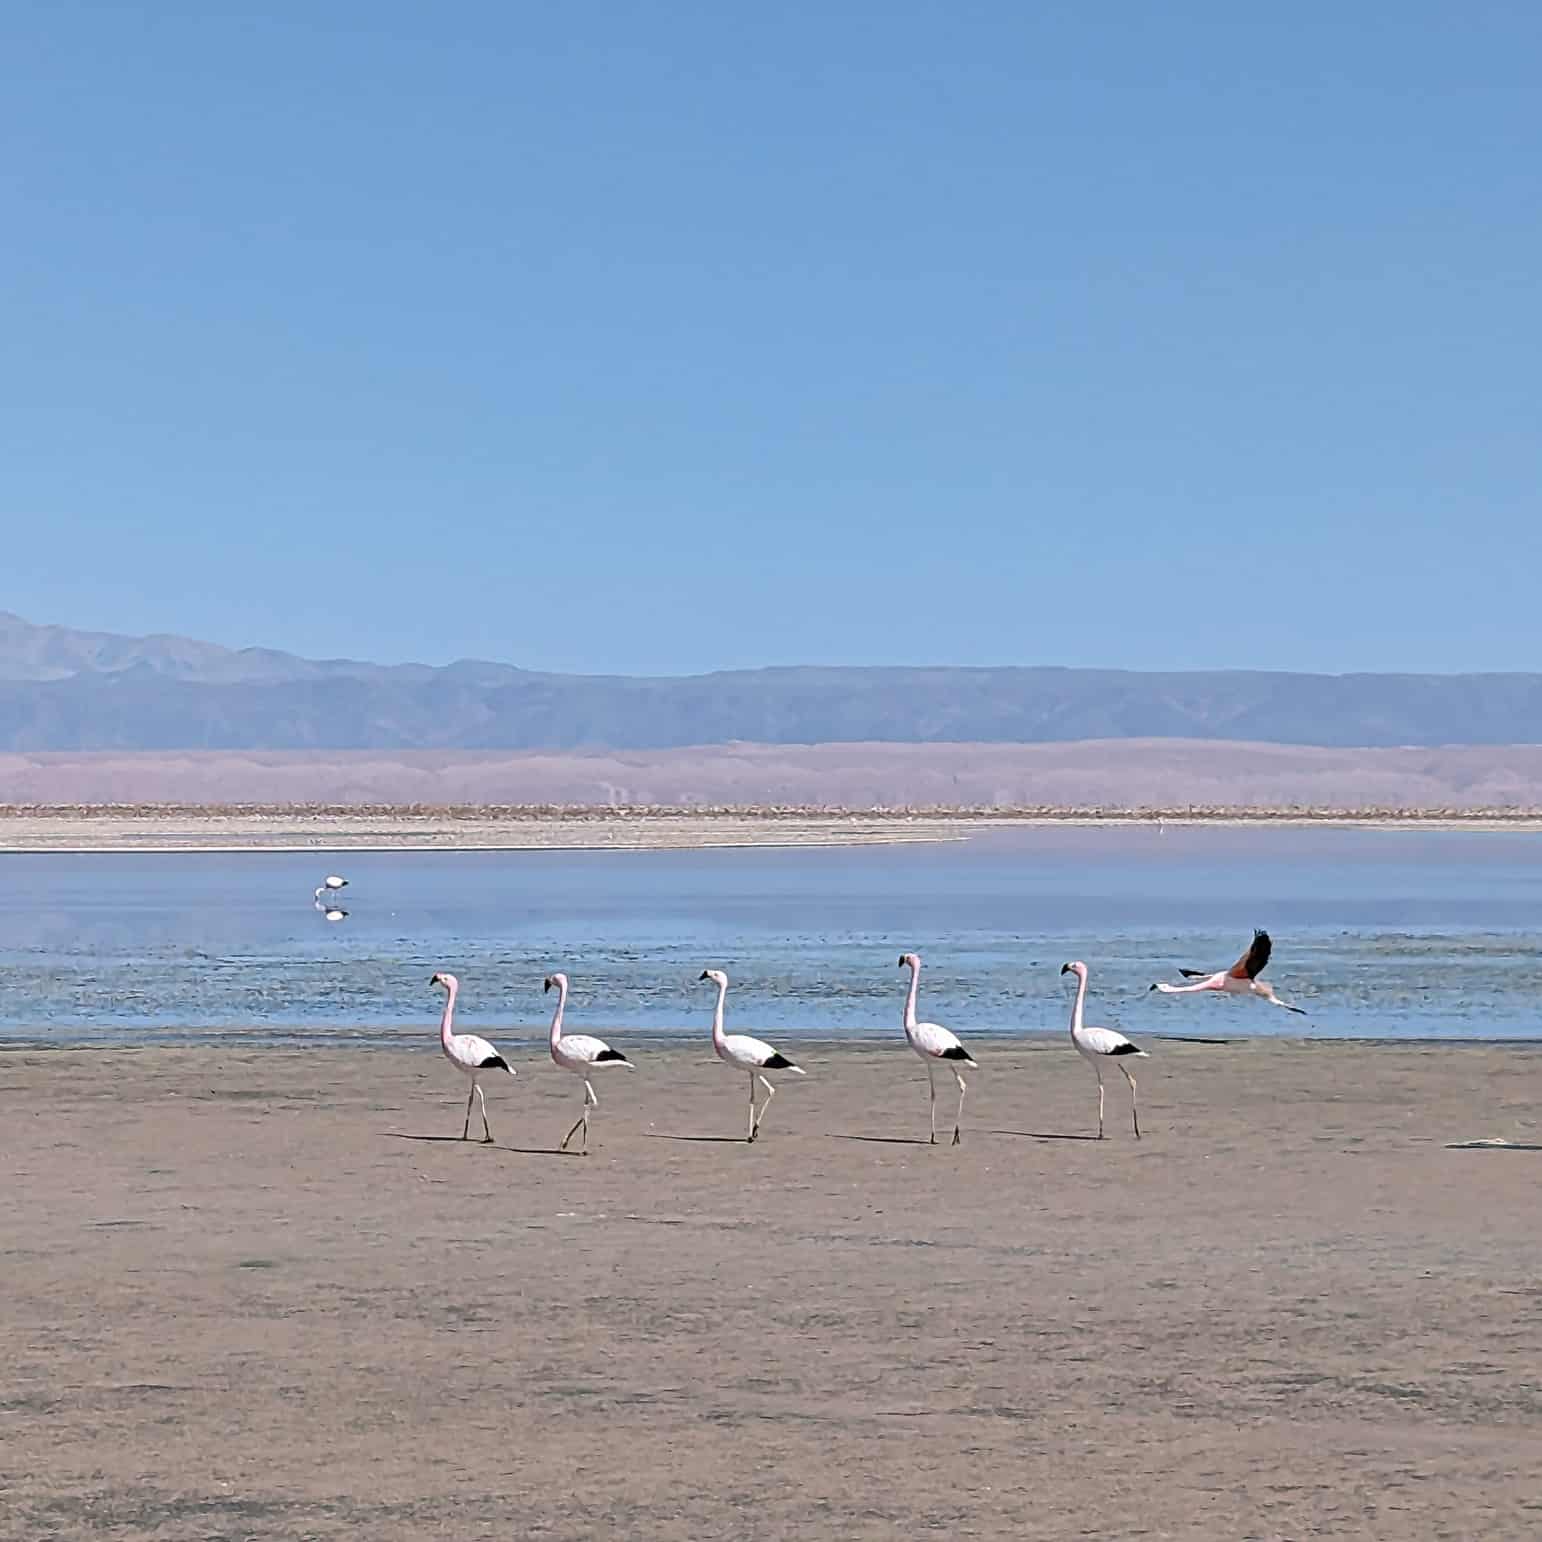 Flamingo in the Atacama Desert, Chile